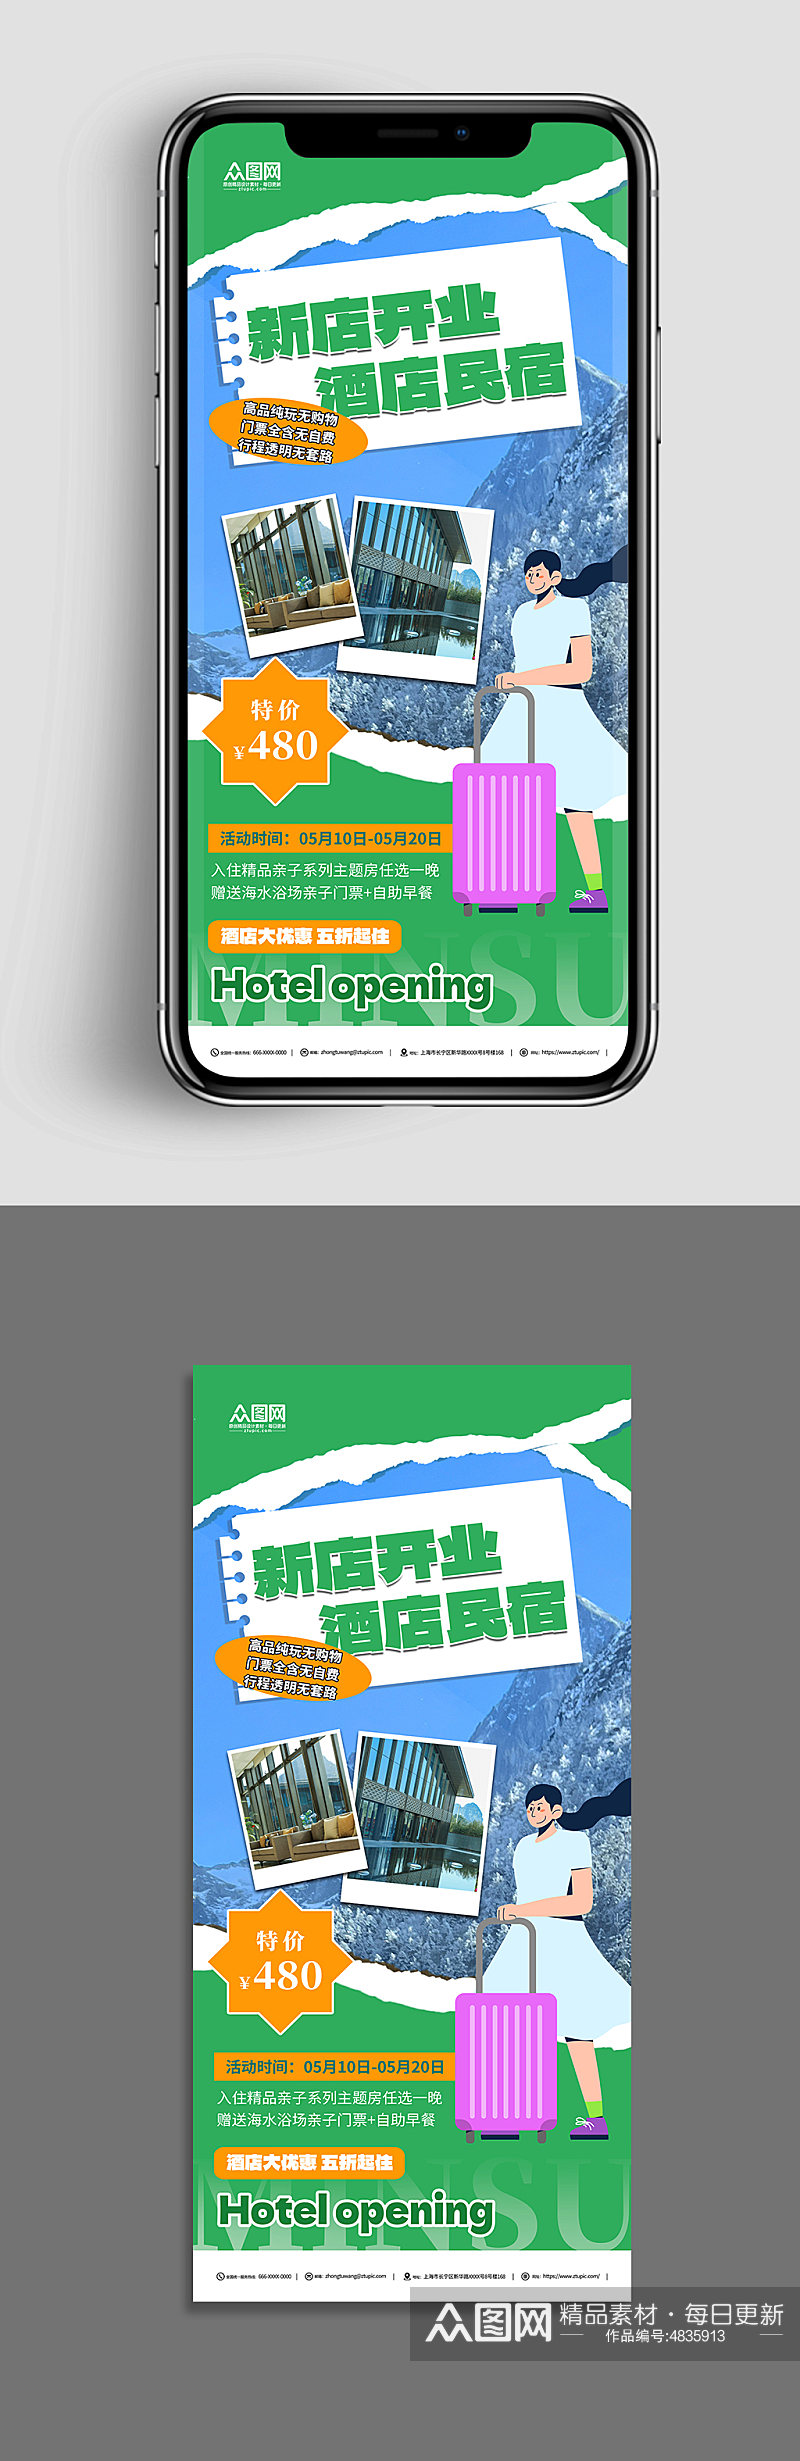 民宿酒店开业旅游活动促销海报素材